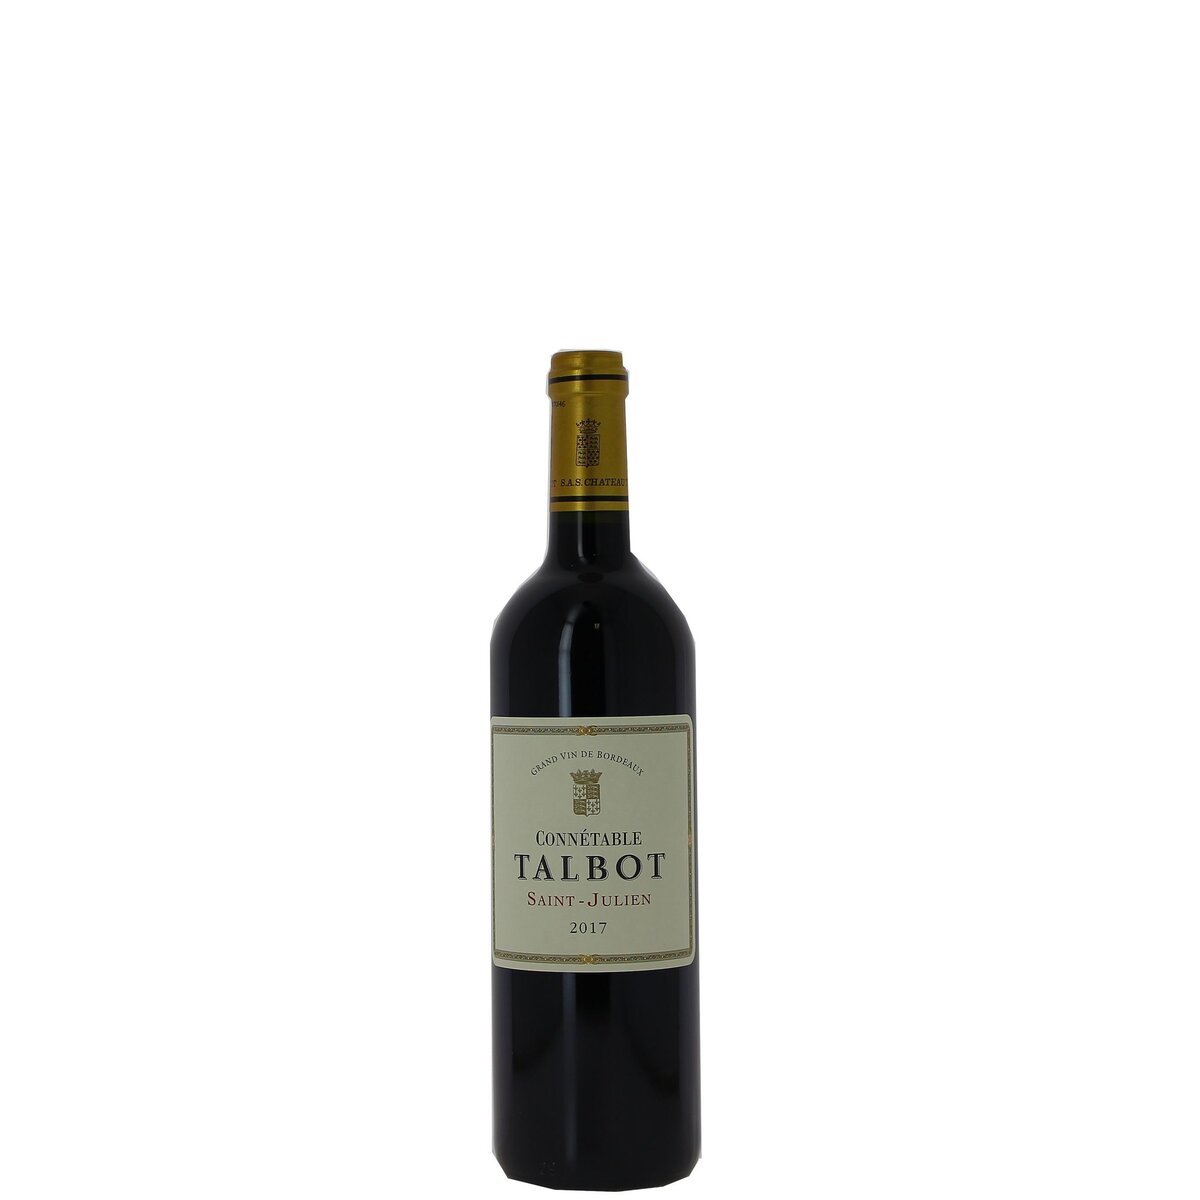 Vin rouge AOP Saint-Julien Connétable Talbot 2017 75cl